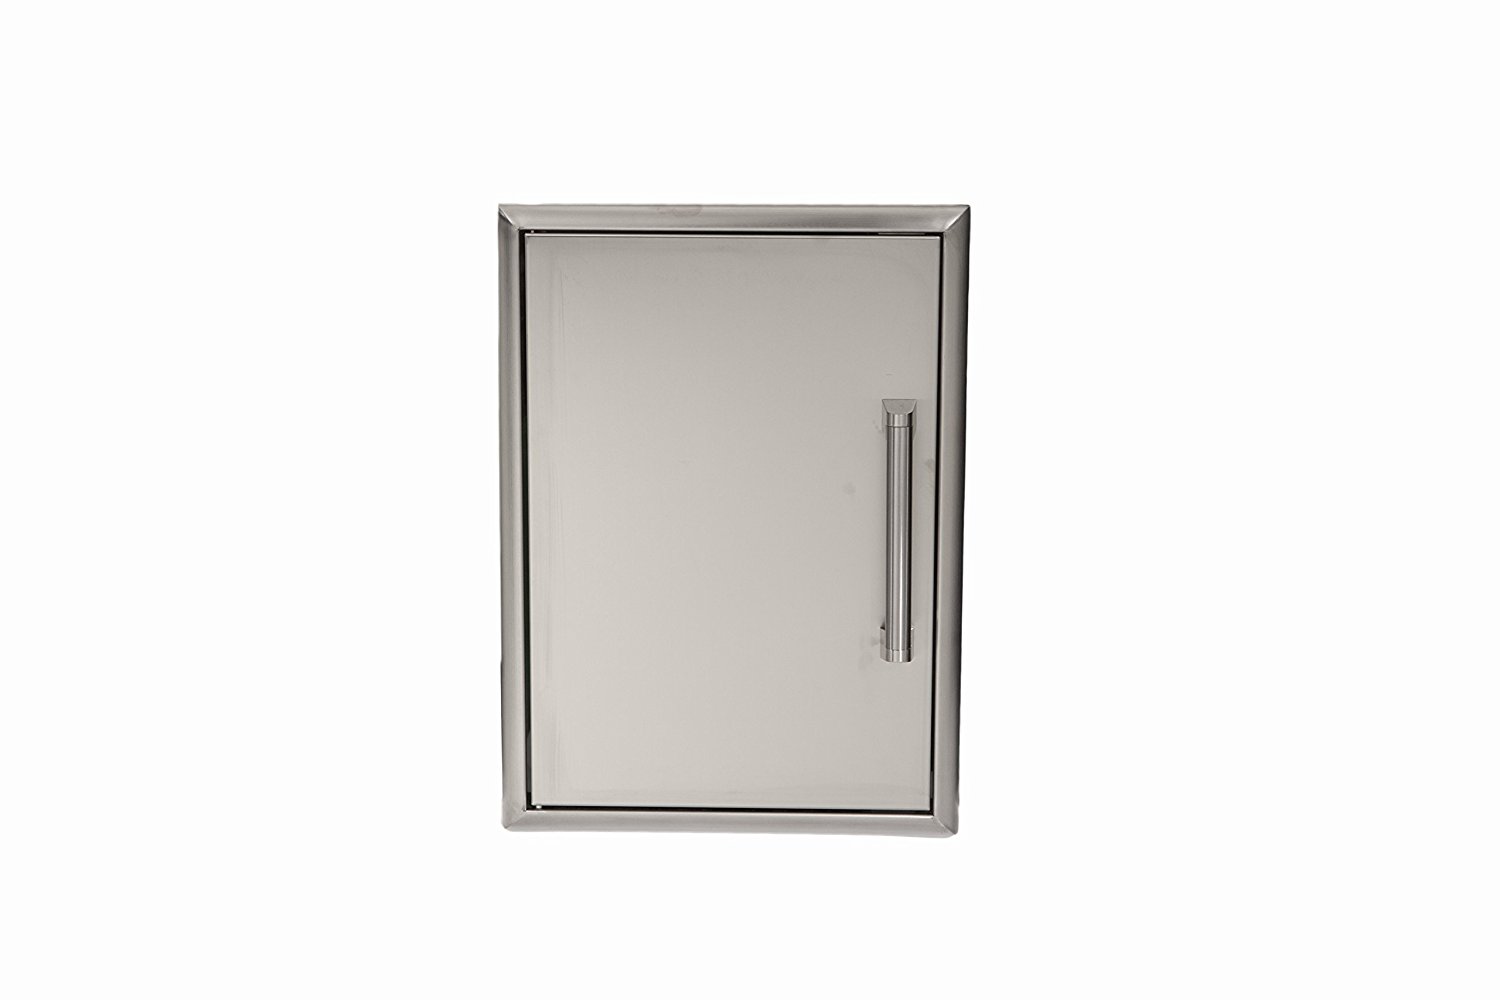 Coyote Single Access Door, 20″x 14″/50 x 35 cm, Stainless Steel